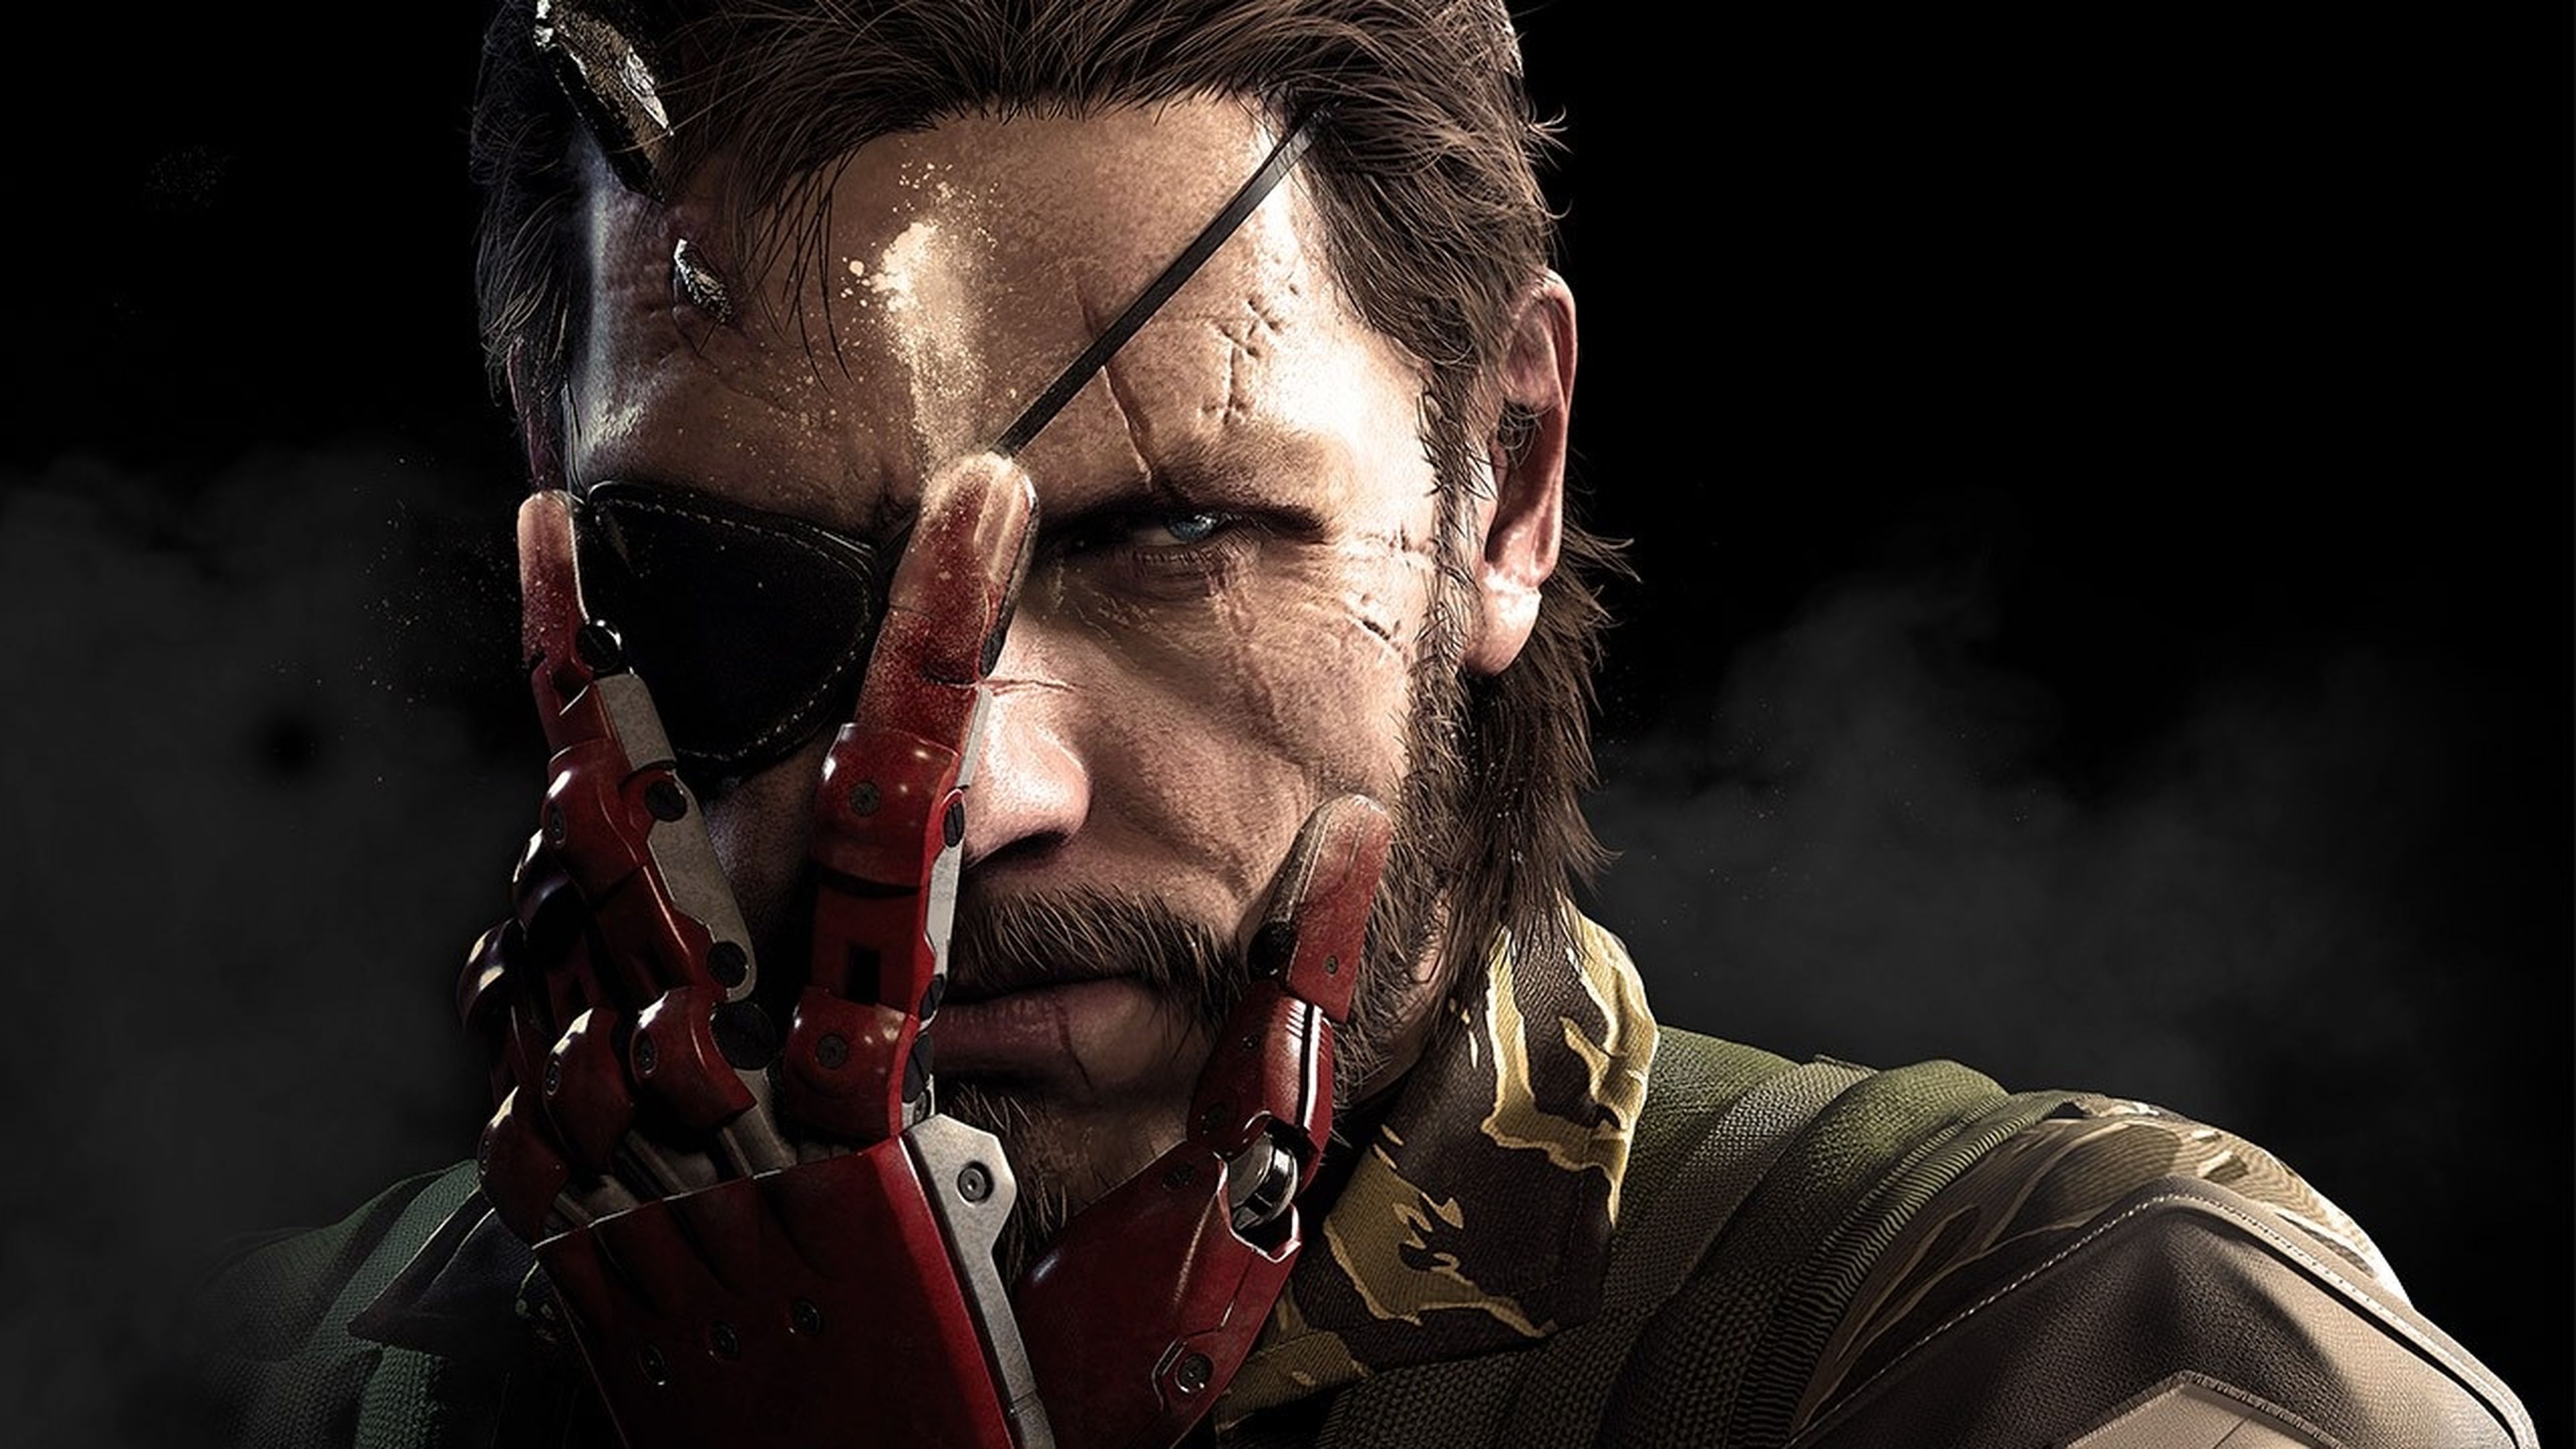 Metal Gear Solid V The Phantom Pain, las ediciones coleccionista sí incluirán los códigos DLC en España